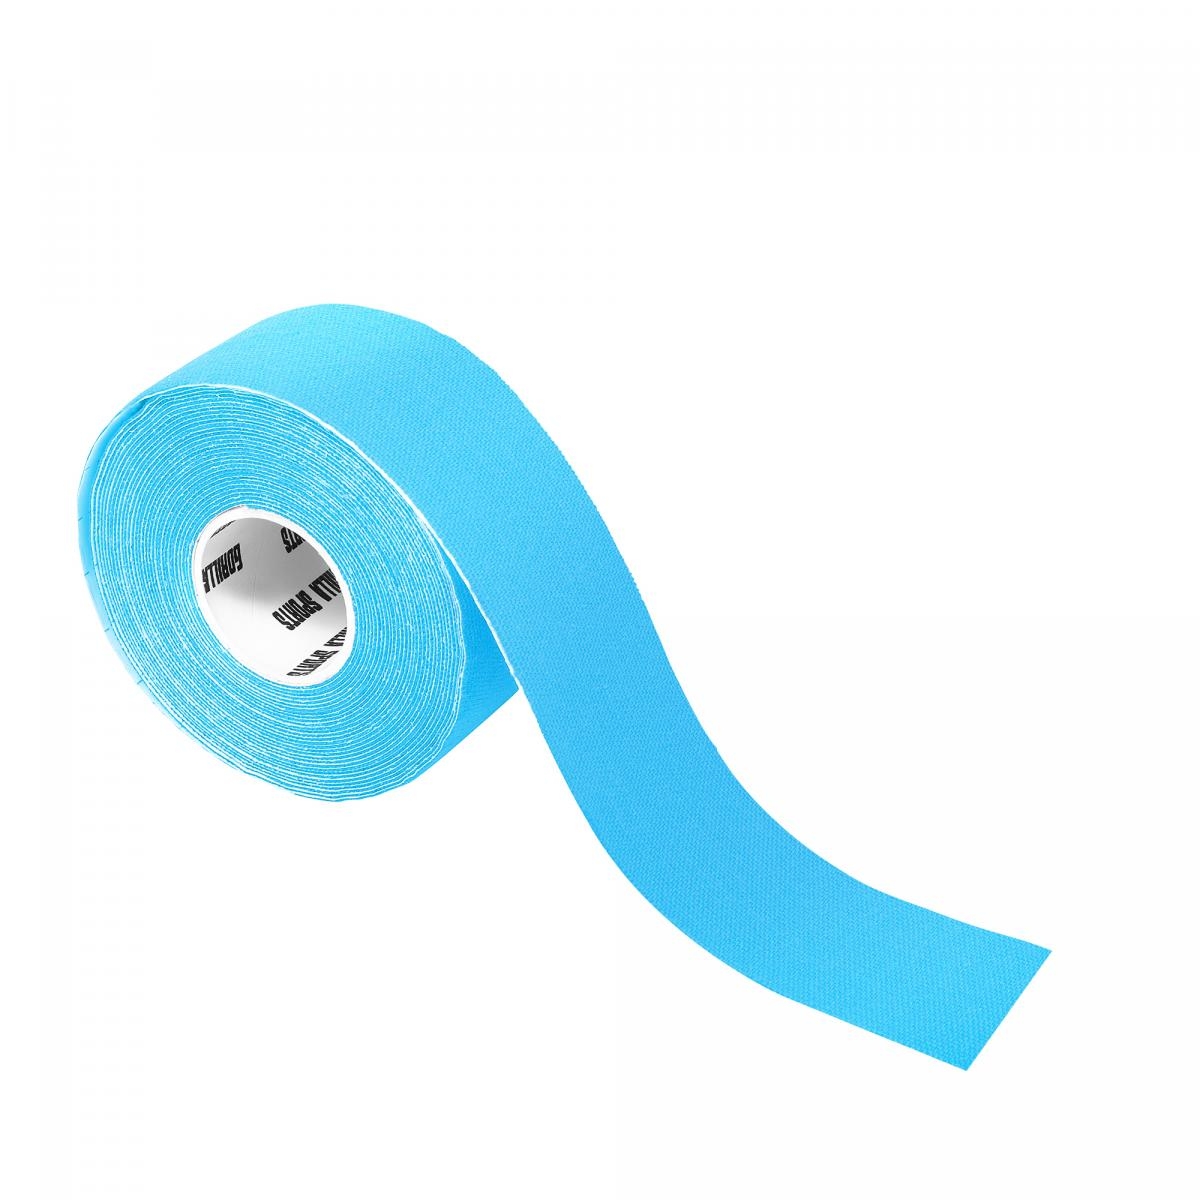 Bande de kinÃ©siologie bleue claire - rouleau de 5 m - Largeur : 2,5 cm